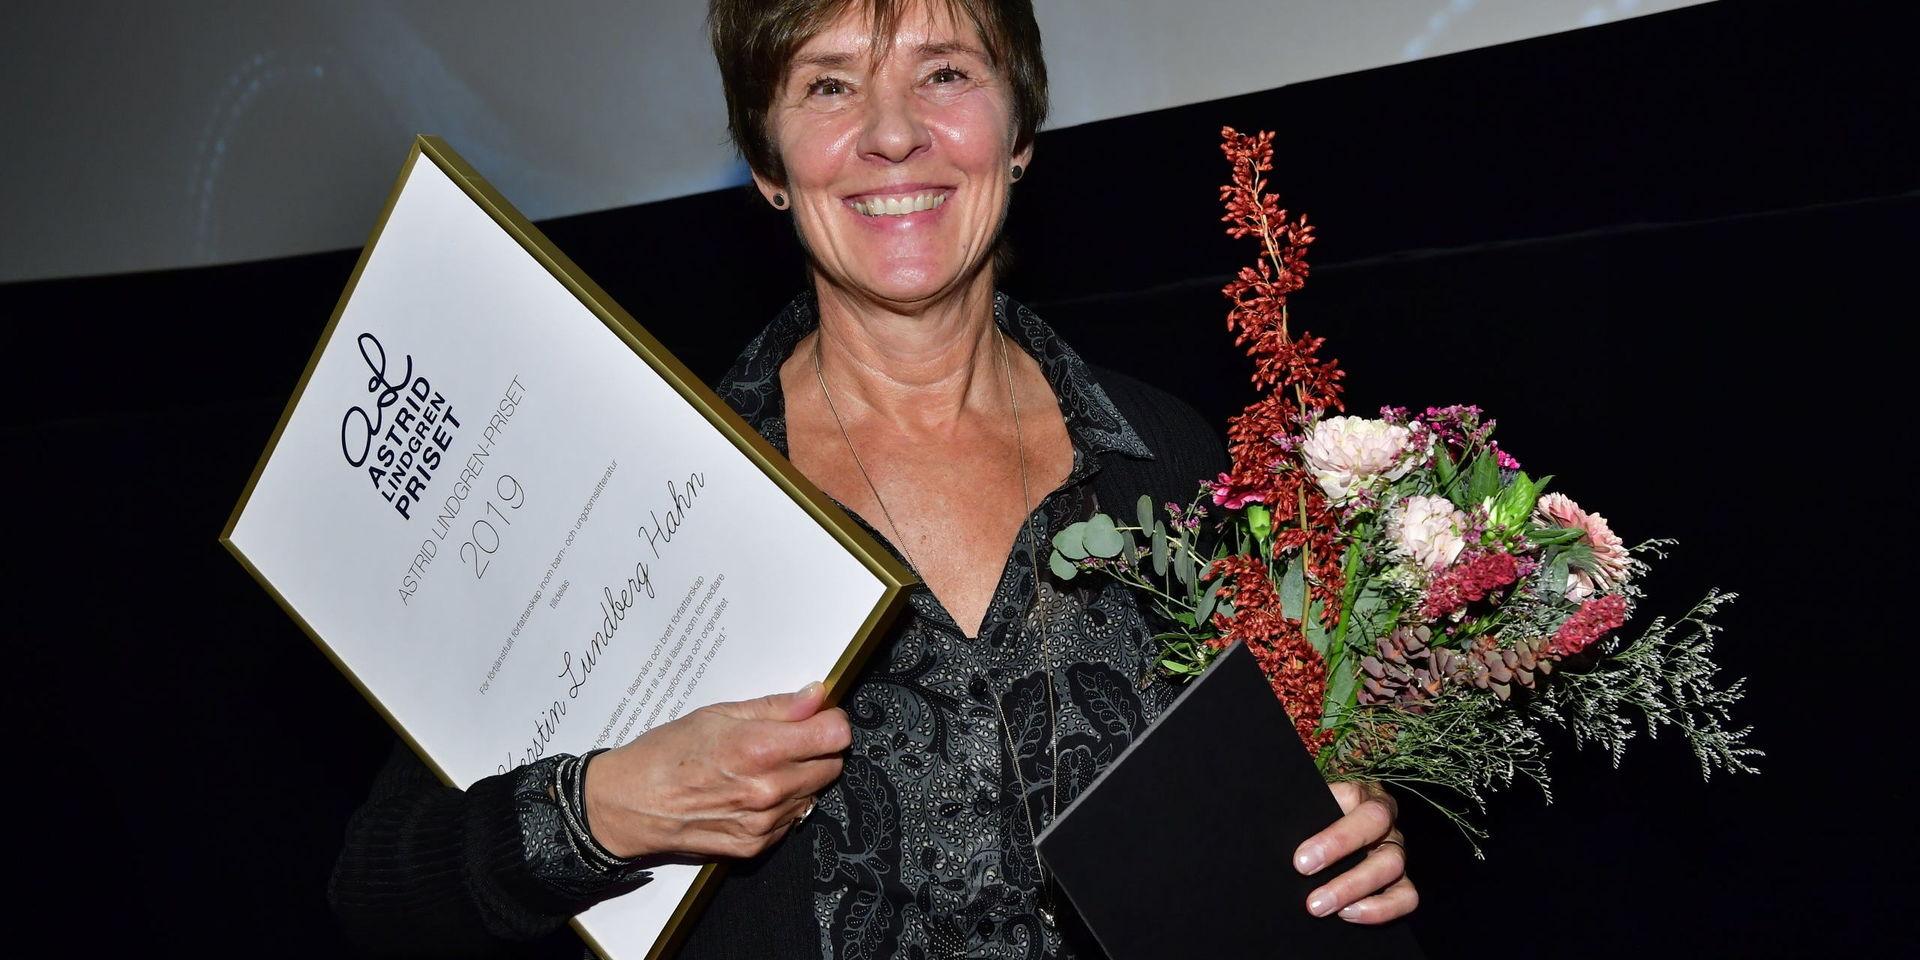 Författaren Kerstin Lundberg Hahn tar emot årets Astrid Lindgren-pris under Astrid Lindgren-konferensen i Filmhuset på torsdagen.